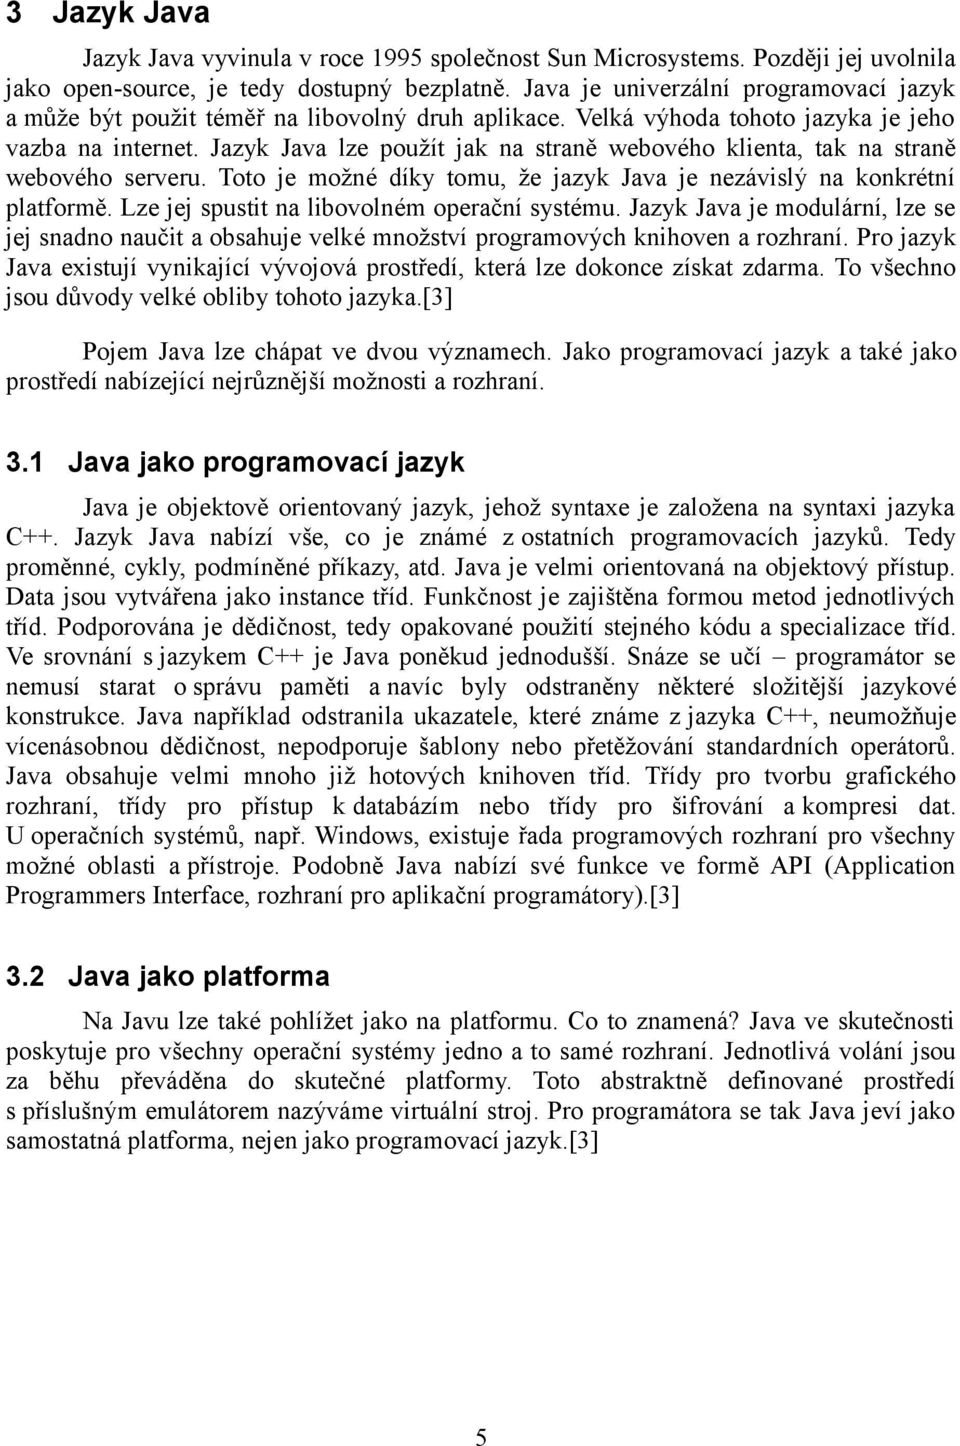 Jazyk Java lze použít jak na straně webového klienta, tak na straně webového serveru. Toto je možné díky tomu, že jazyk Java je nezávislý na konkrétní platformě.